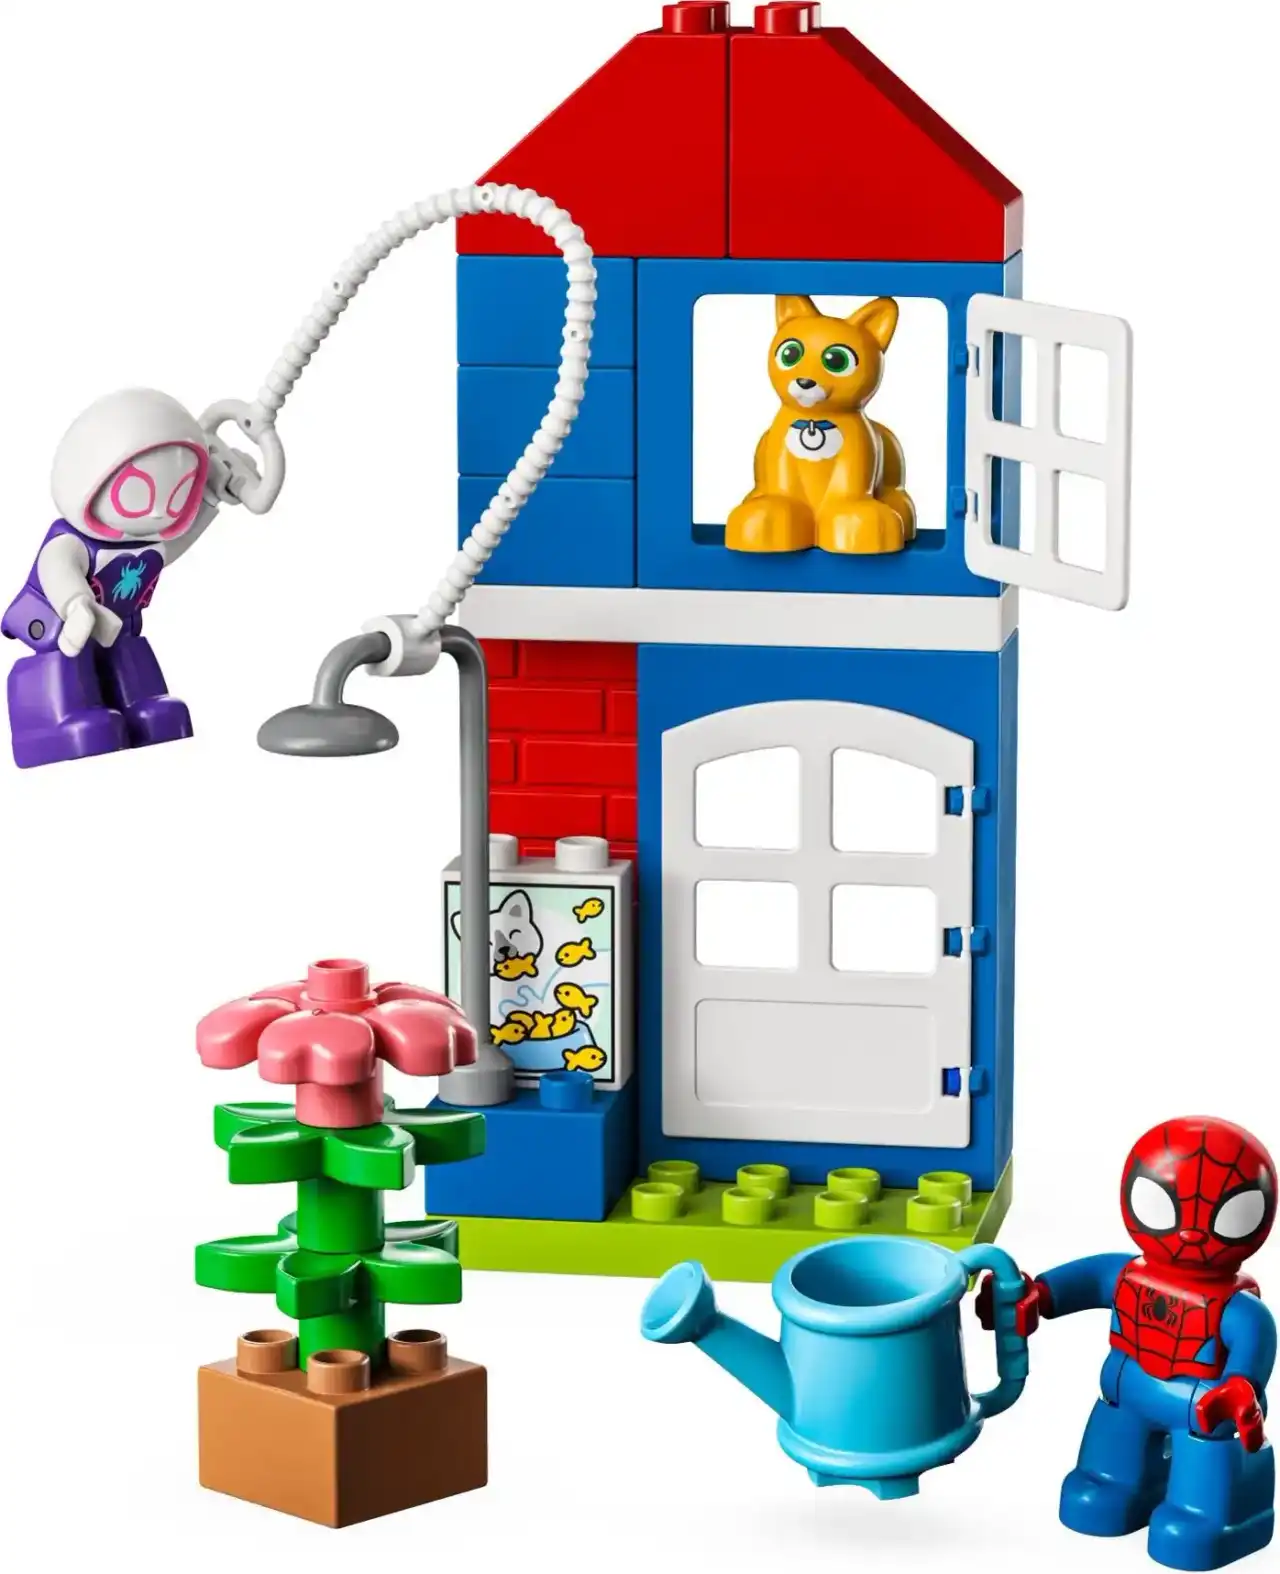 10995 - Spider-Man's House